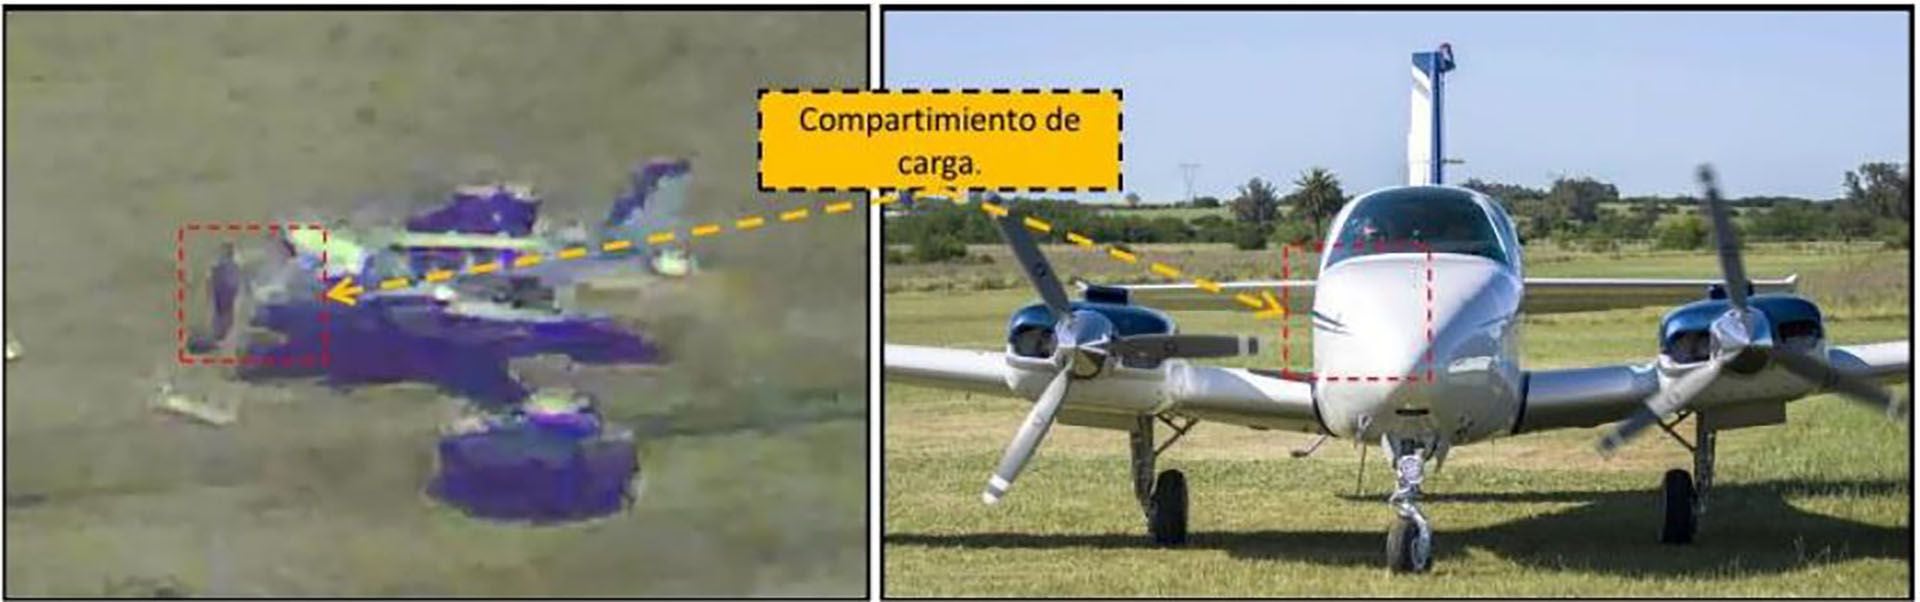 La aeronave Piper que transportó la pasta base a Paraguay